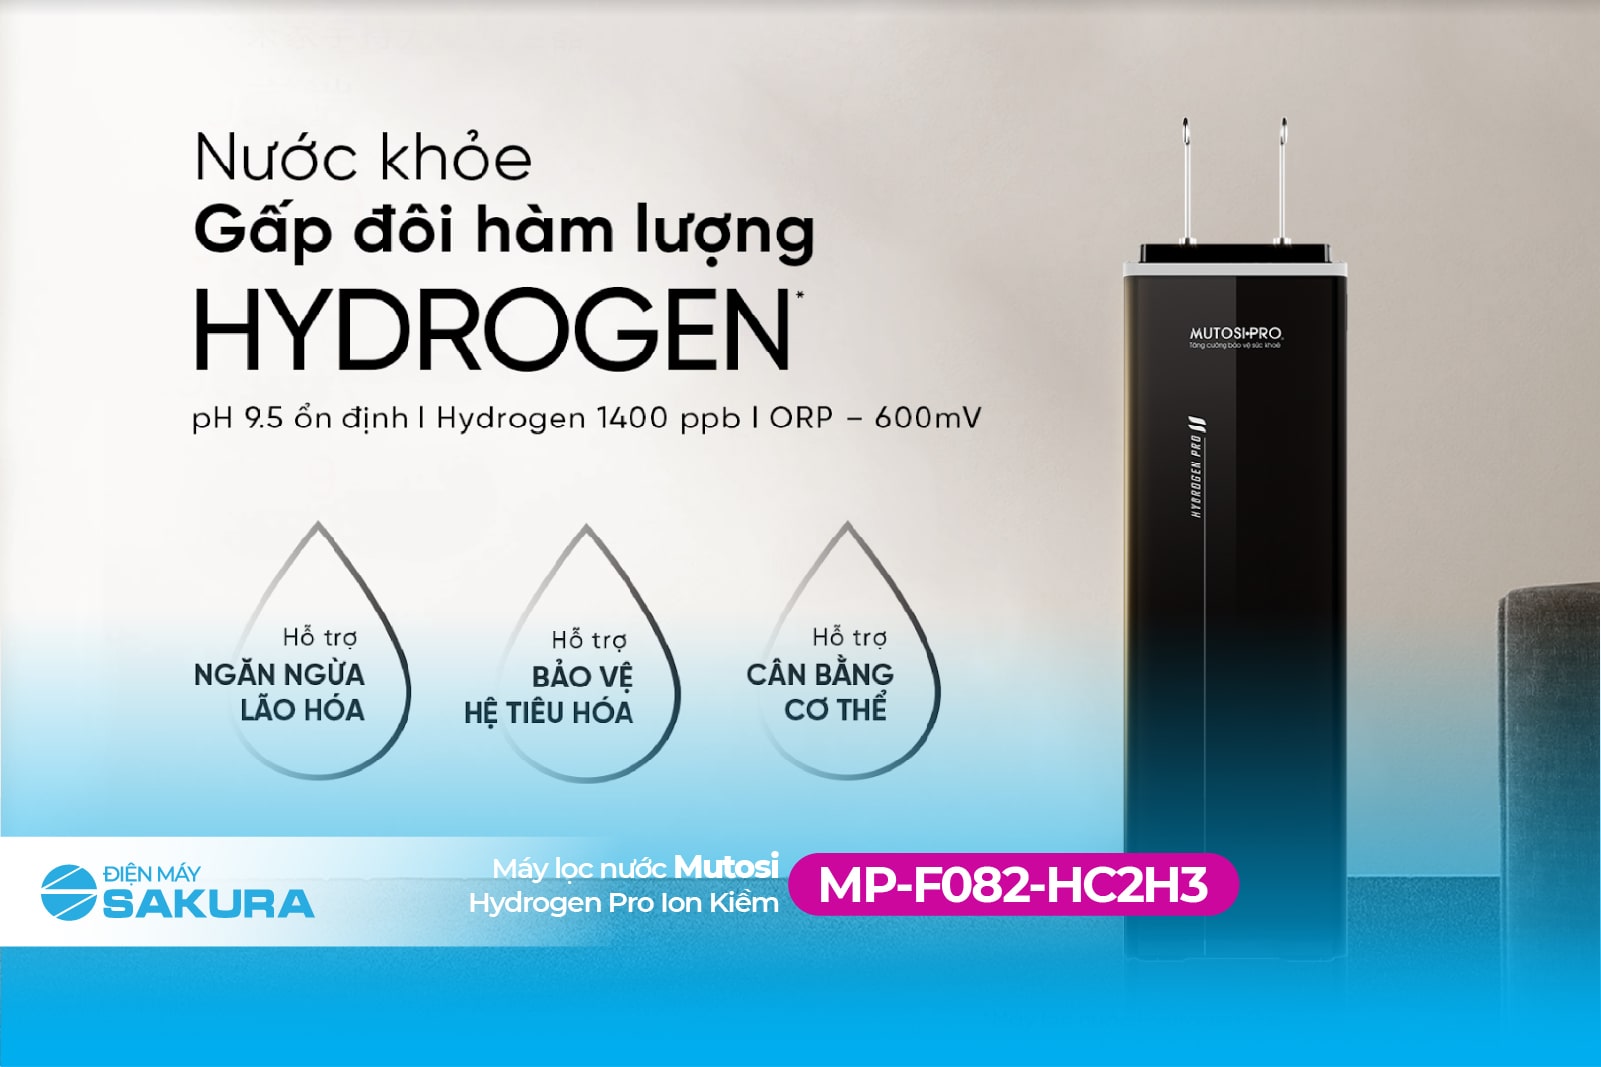 Nước khỏe với gấp đôi hàm lượng Hydrogen